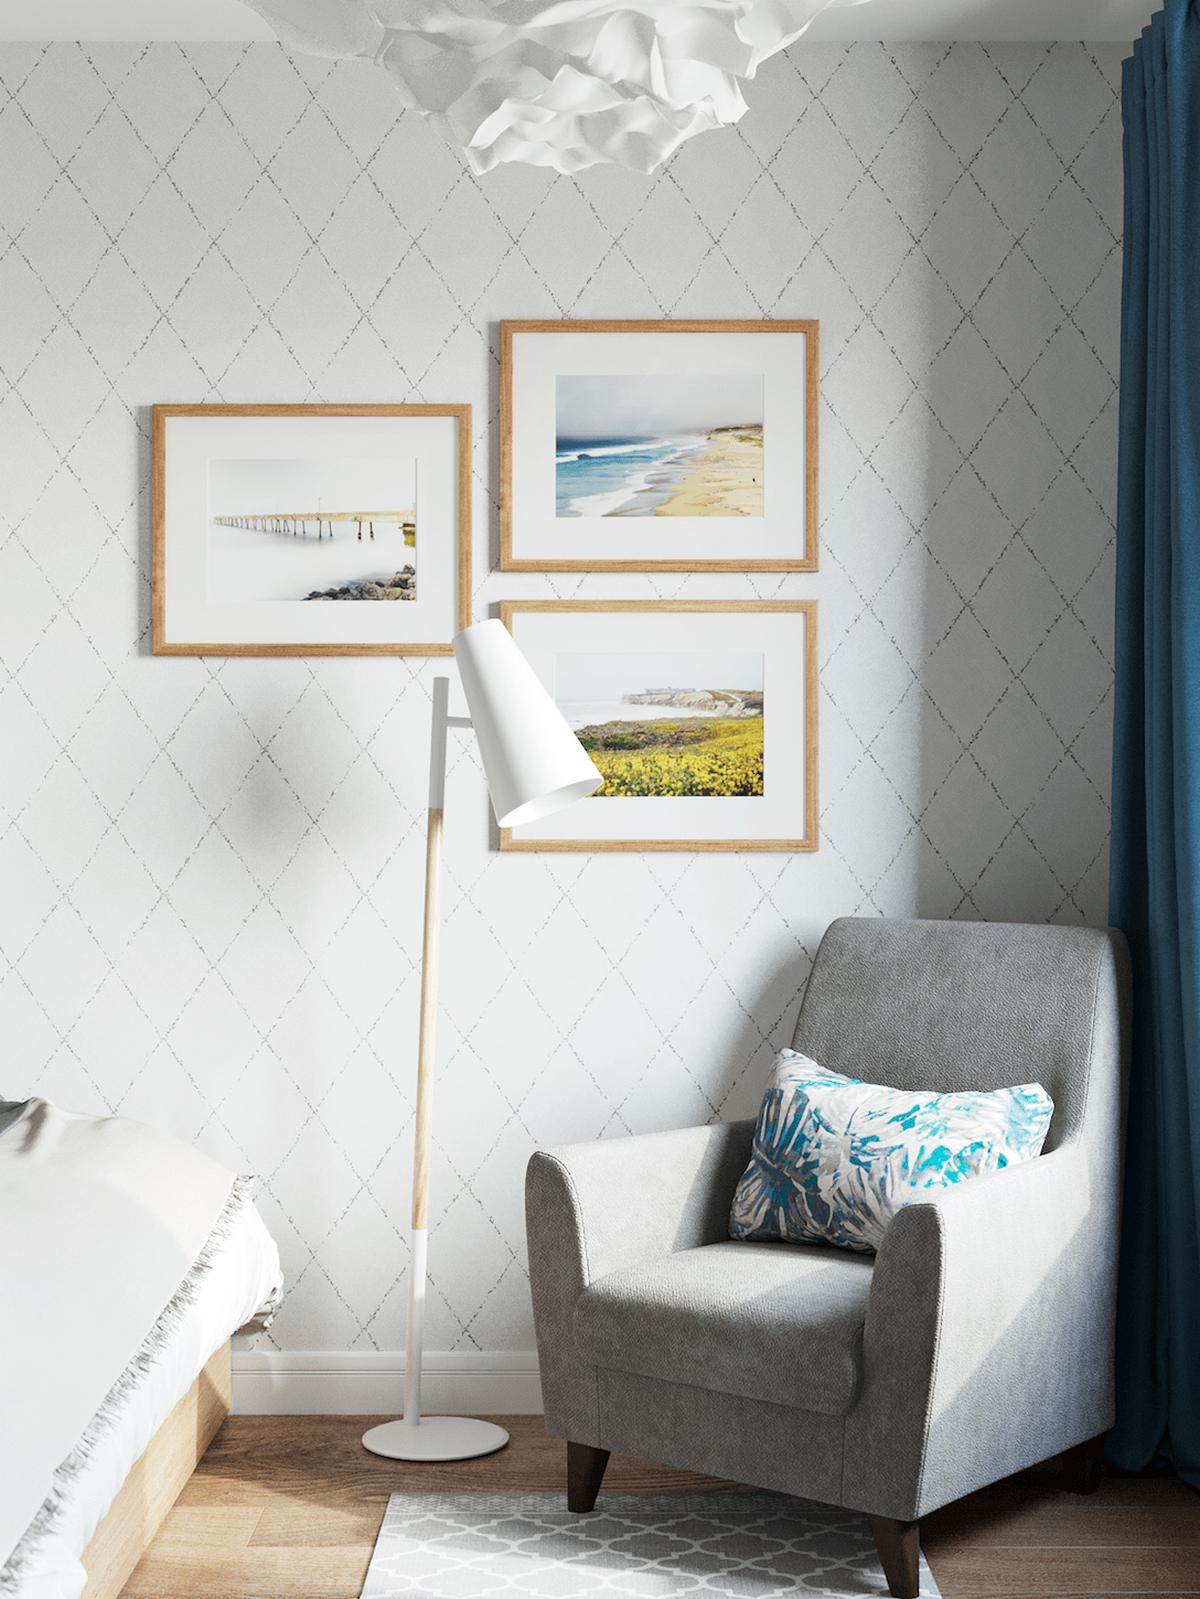 Một chiếc ghế bành màu xám đặt ở cạnh ô cửa sổ cùng với chiếc đèn sàn dáng cao cung cấp vị trí đọc sách hoặc thư giãn cho chủ nhân.